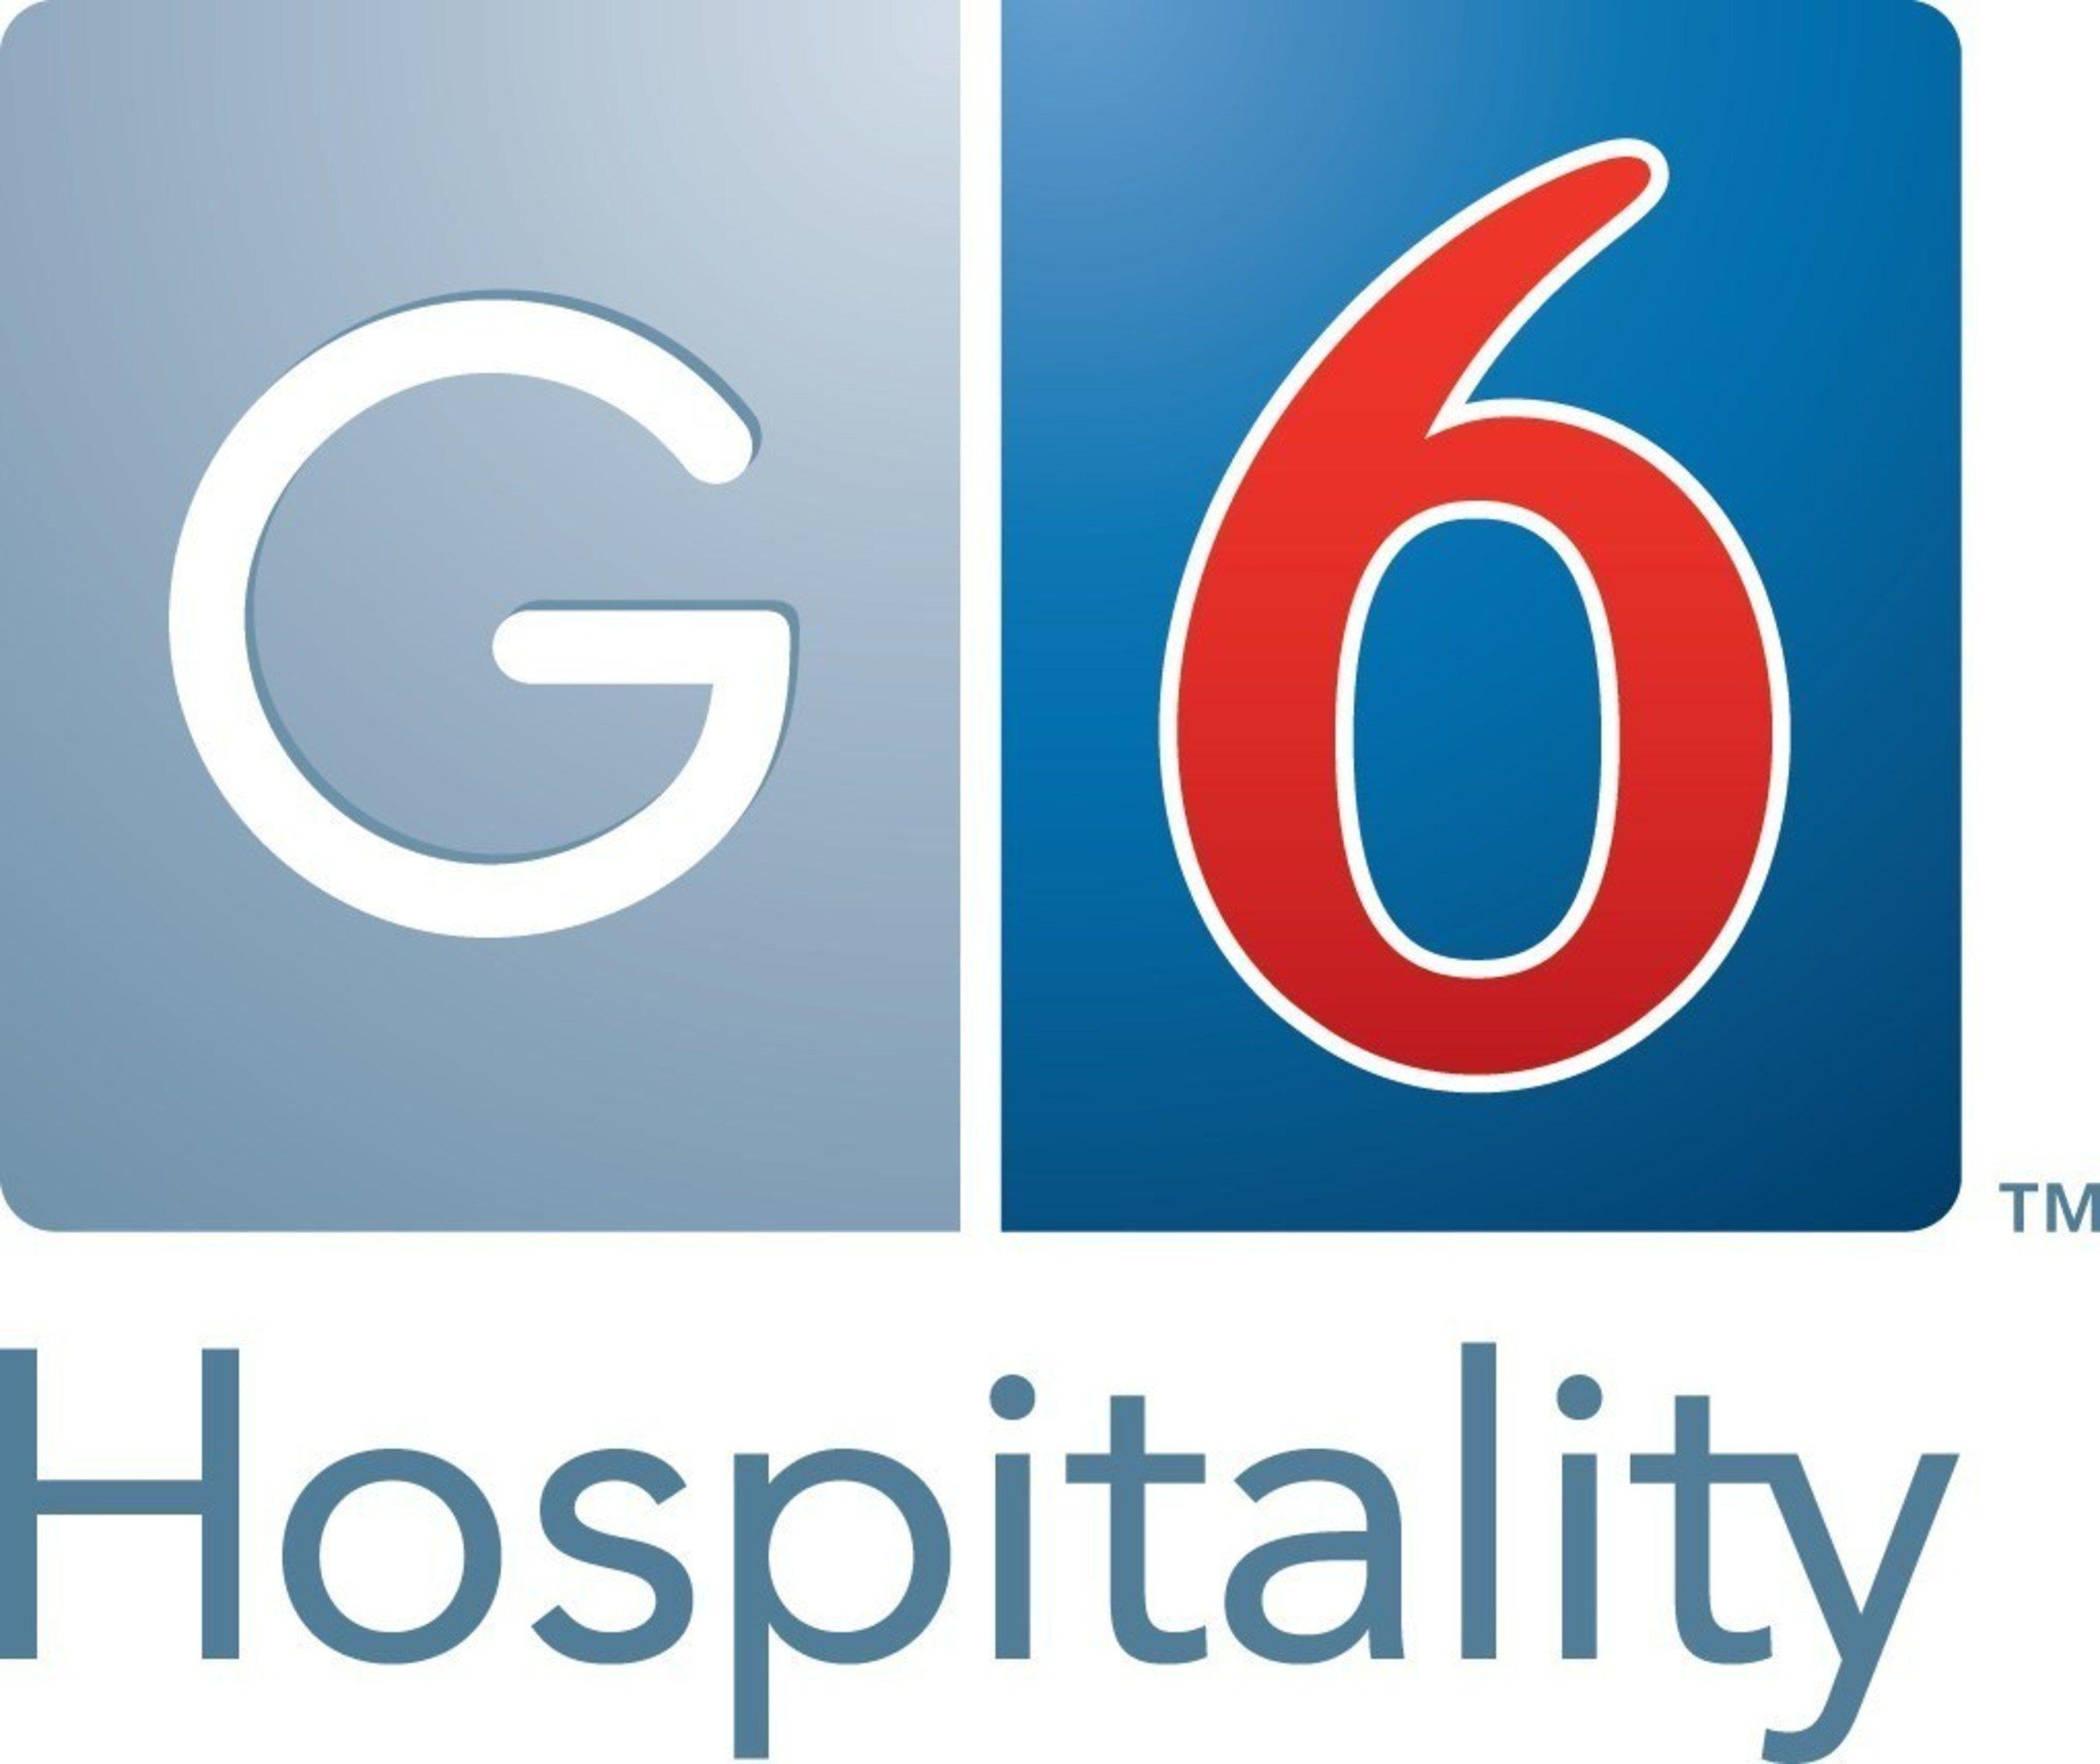 Motel 6 Logo - G6 Hospitality Wins 